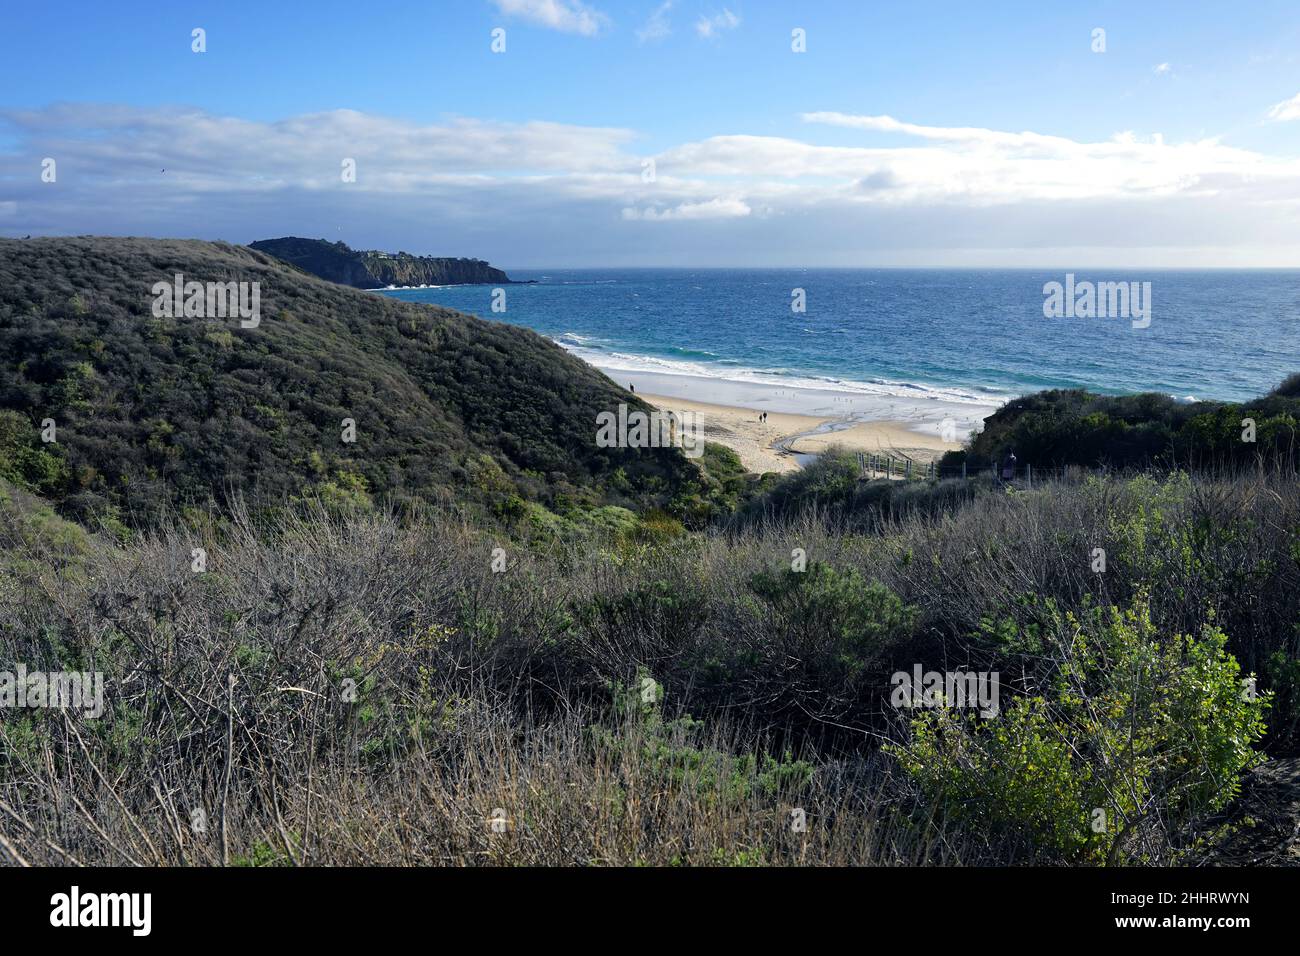 Der Blick auf das Ufer mit grünen Hügeln und das Meer im Hintergrund. Kalifornische Küste. Stockfoto